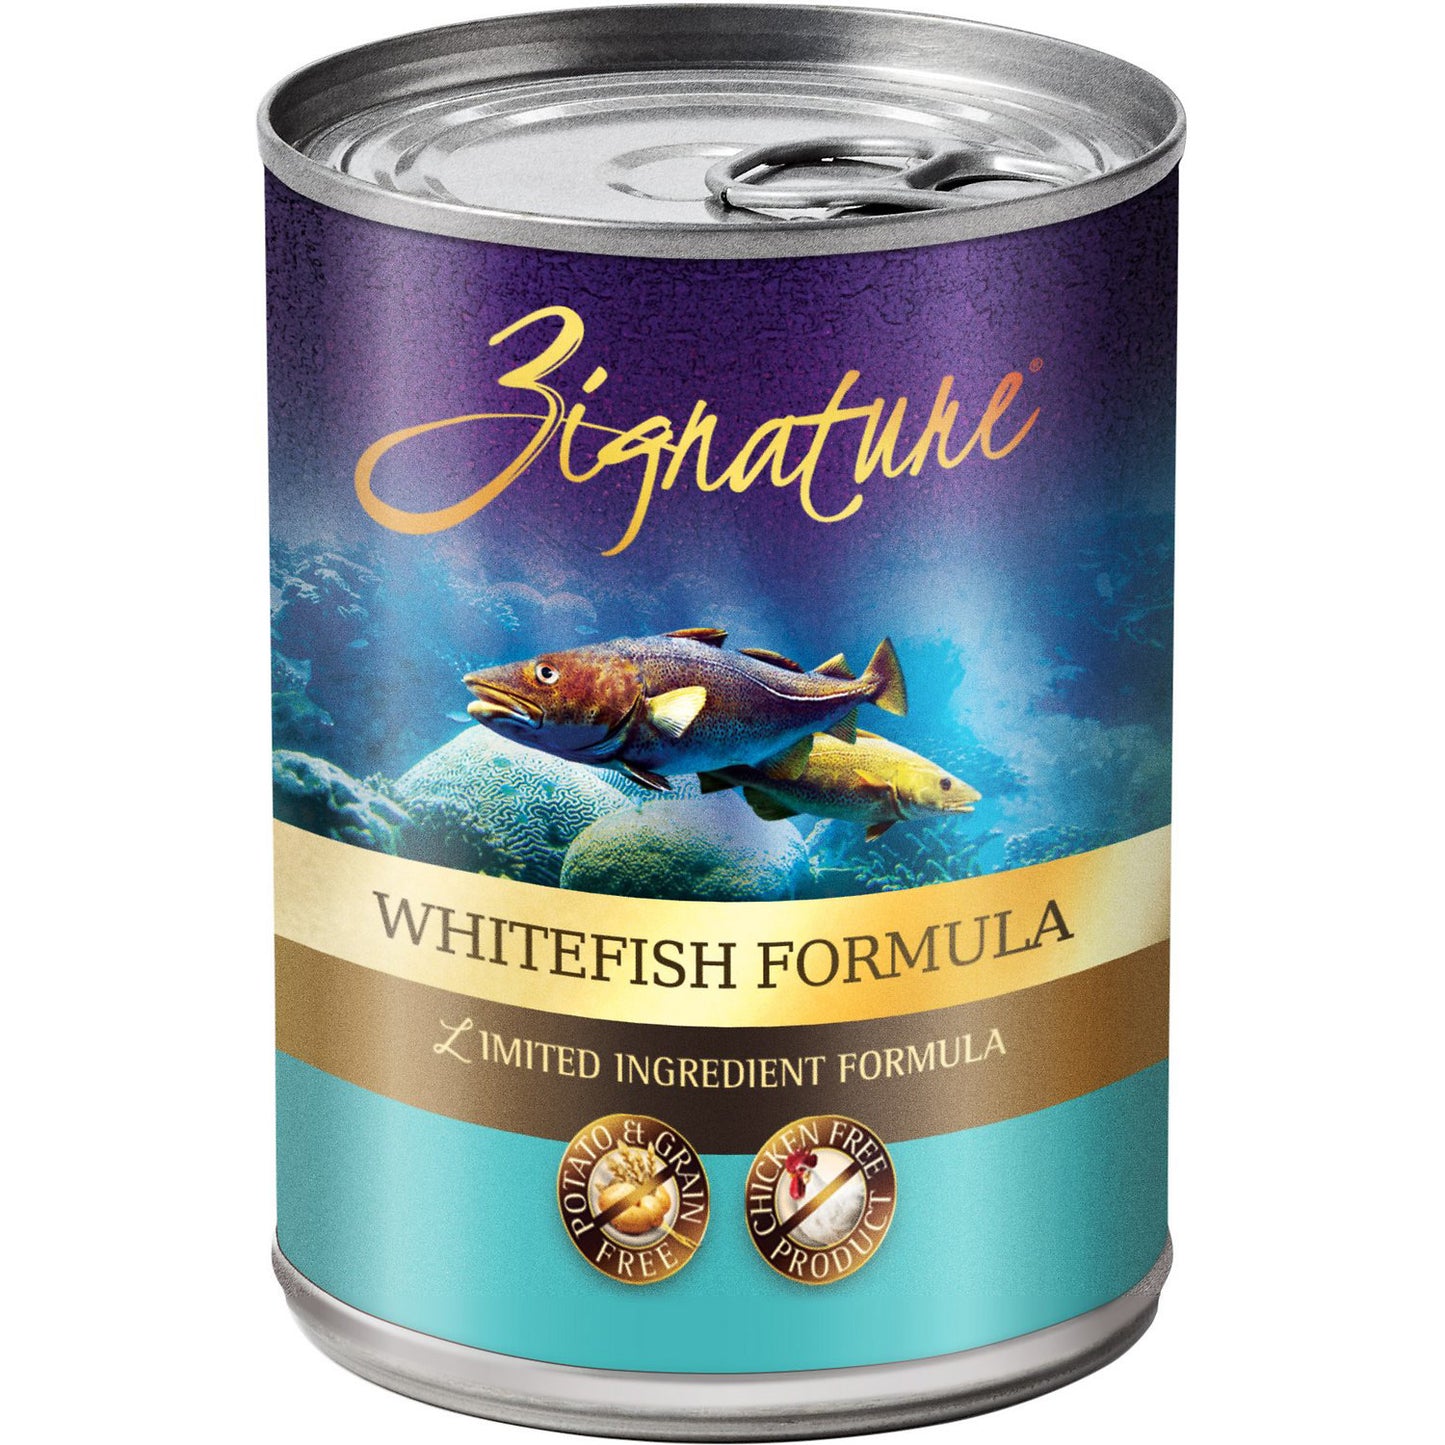 Zignature Whitefish Formula